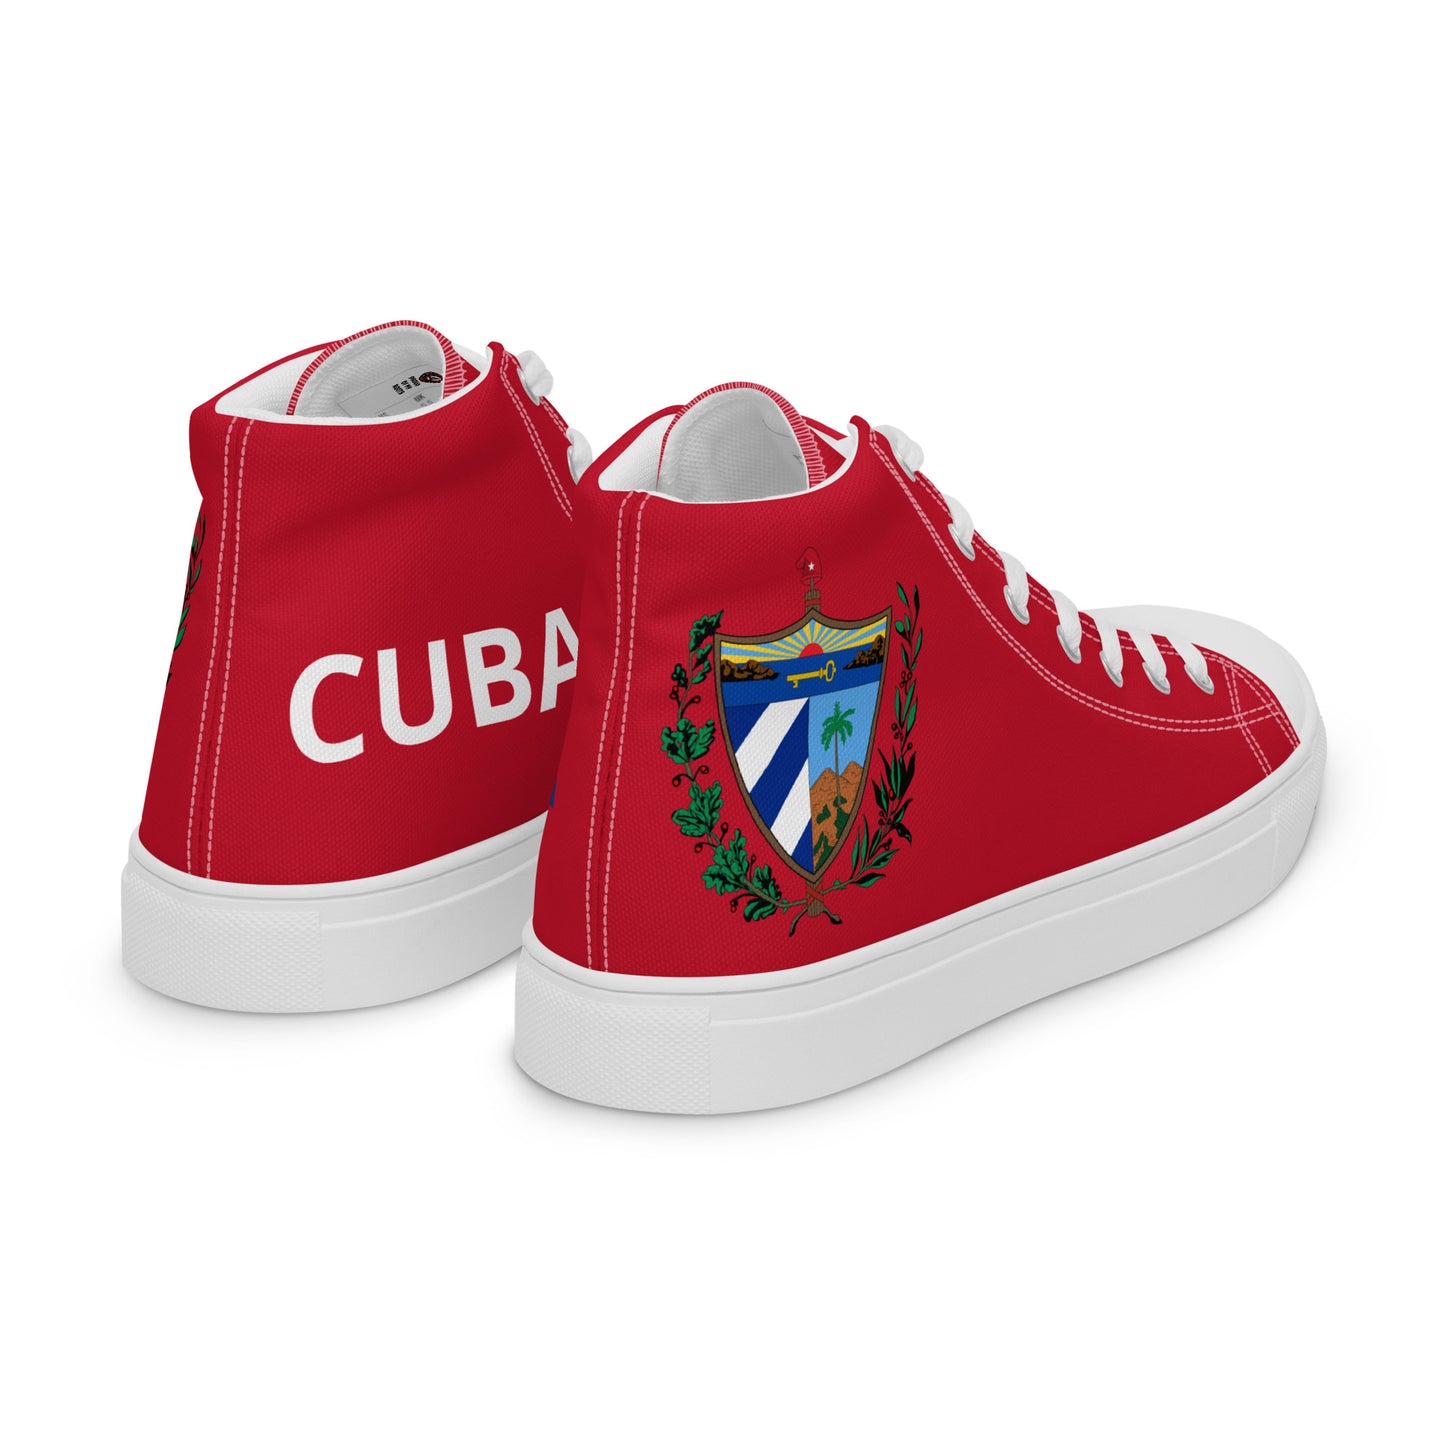 Cuba - Women - Red - High top shoes